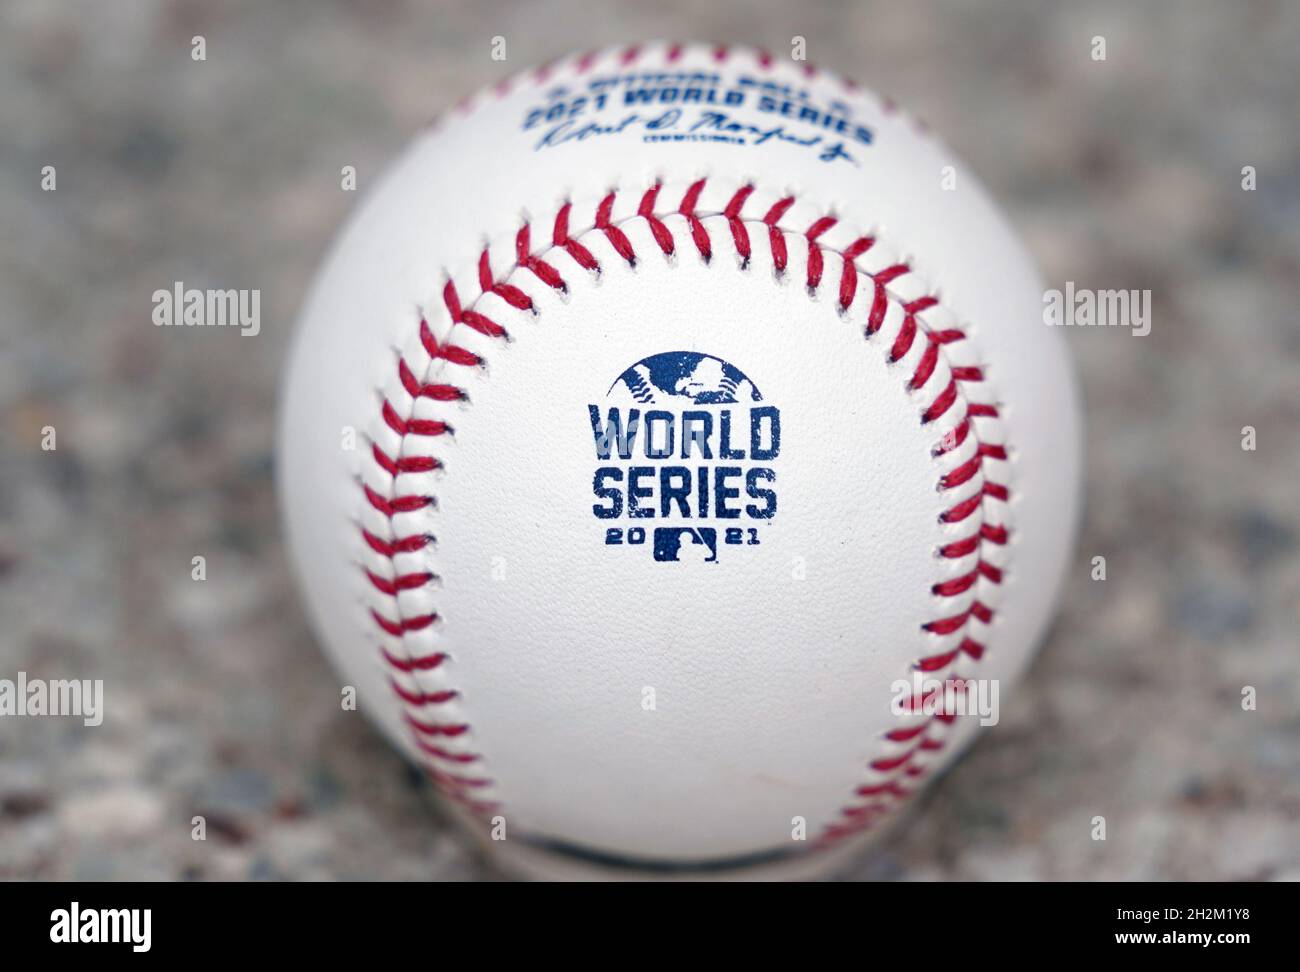 St. Louis, États-Unis.22 octobre 2021.La Rawlings Sporting Goods Company a lancé le World Series Baseball 2021 à St. Louis le vendredi 22 octobre 2021, qui sera utilisé dans le classique d'automne de cette année à compter du 26 octobre 2021.Photo par Bill Greenblatt/UPI crédit: UPI/Alay Live News Banque D'Images